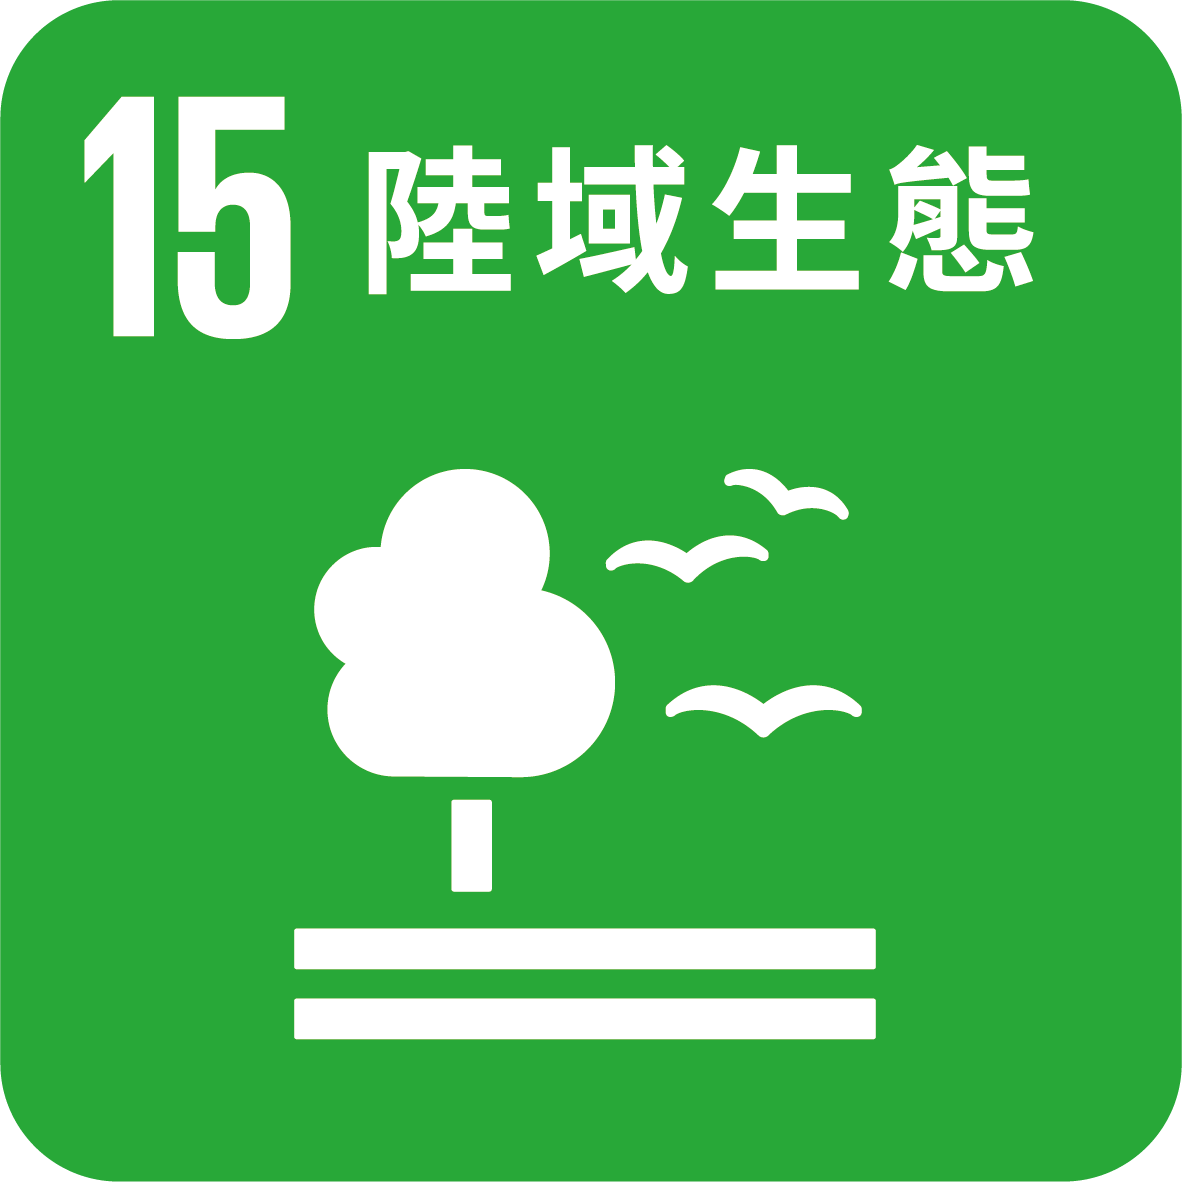 目標15_保育和永續利用陸域生態系統 永續管理森林防治沙漠化、防止土地劣化 遏止生物多樣性的喪失